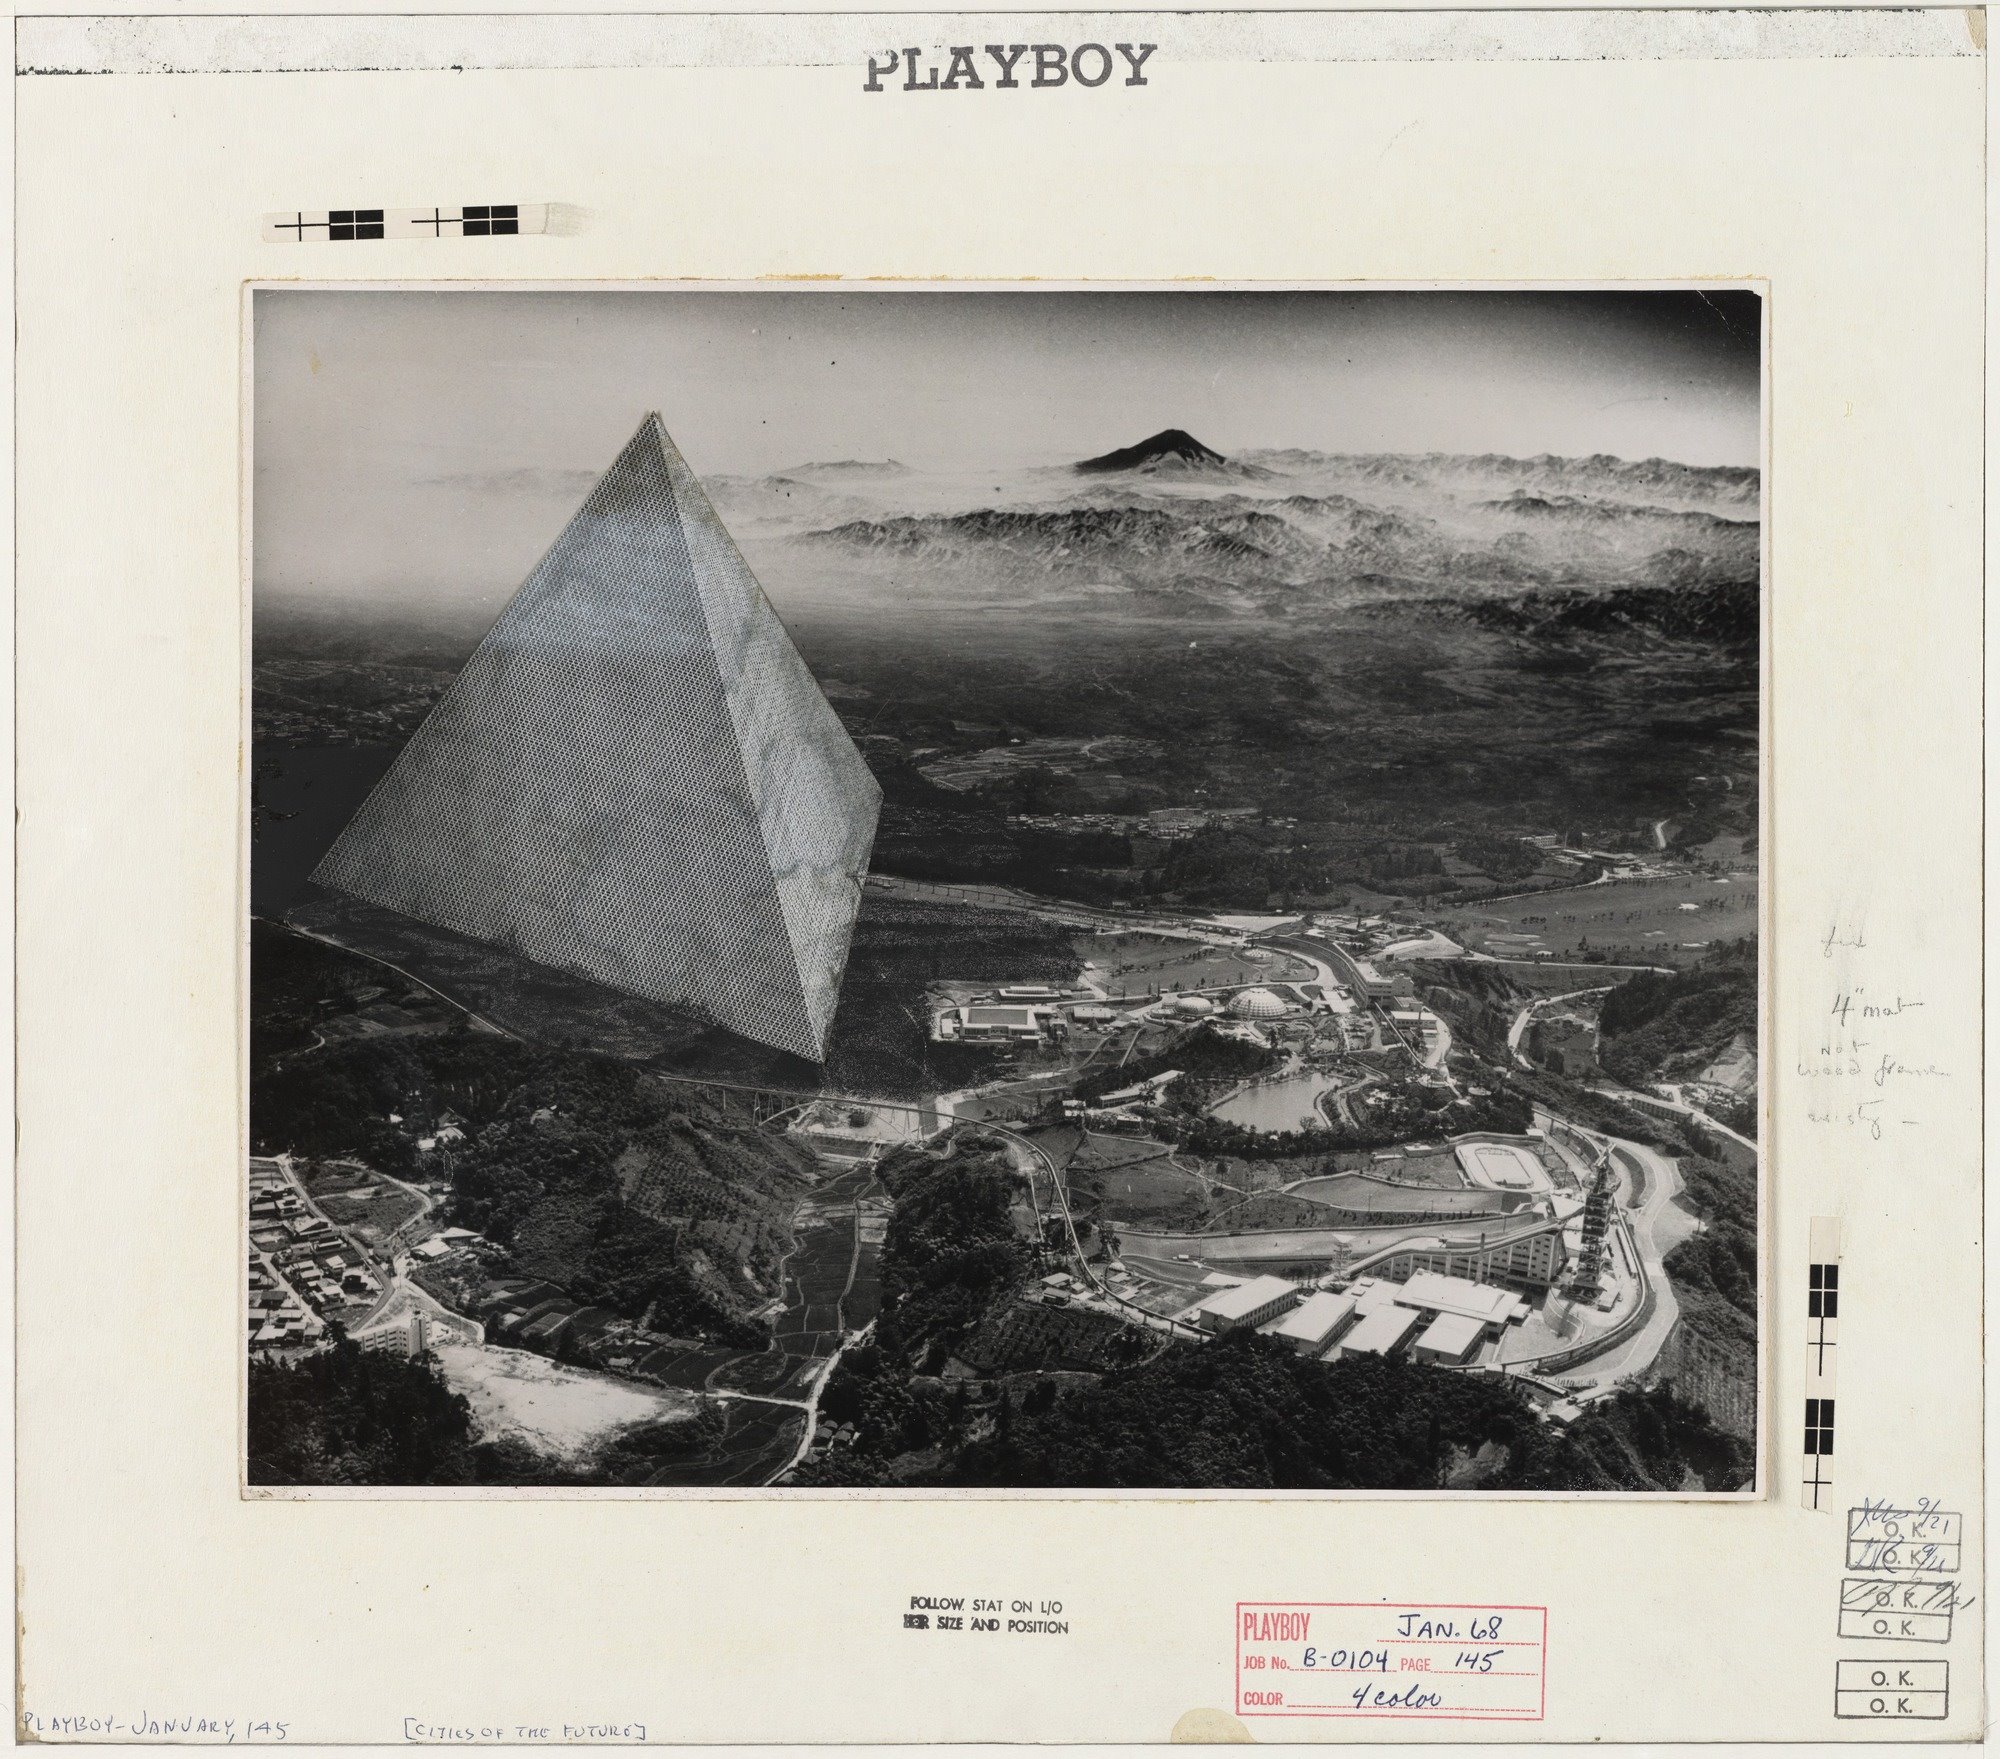 Proyecto de la ciudad Tetrahedron en Japon realizado junto a Buckmister Fuller en 1969